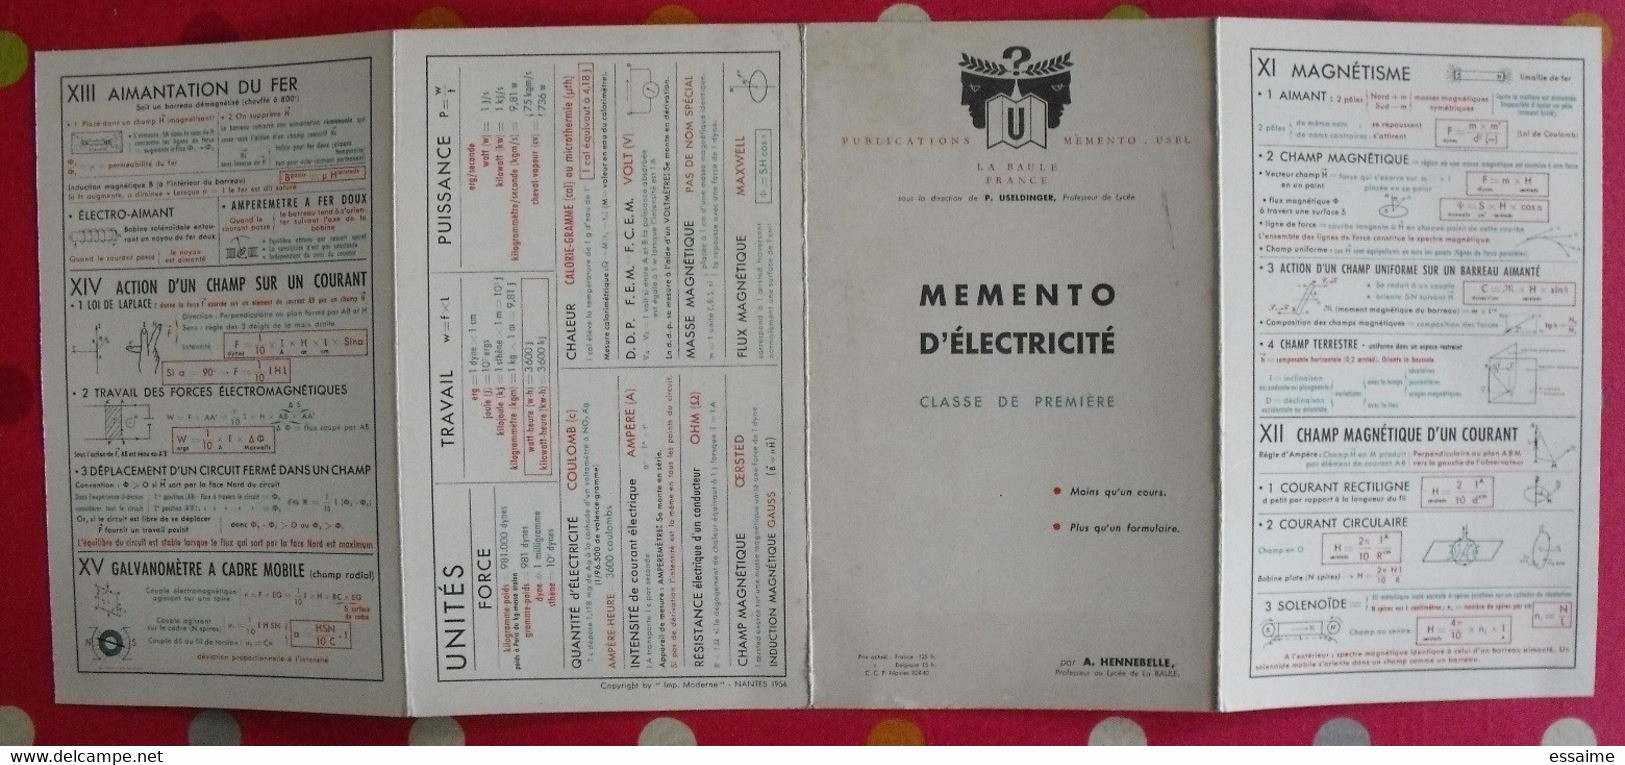 5 livrets memento  optique électricité sciences naturelles. Useldinger duolé Hennebelle assombre. 1954-1964